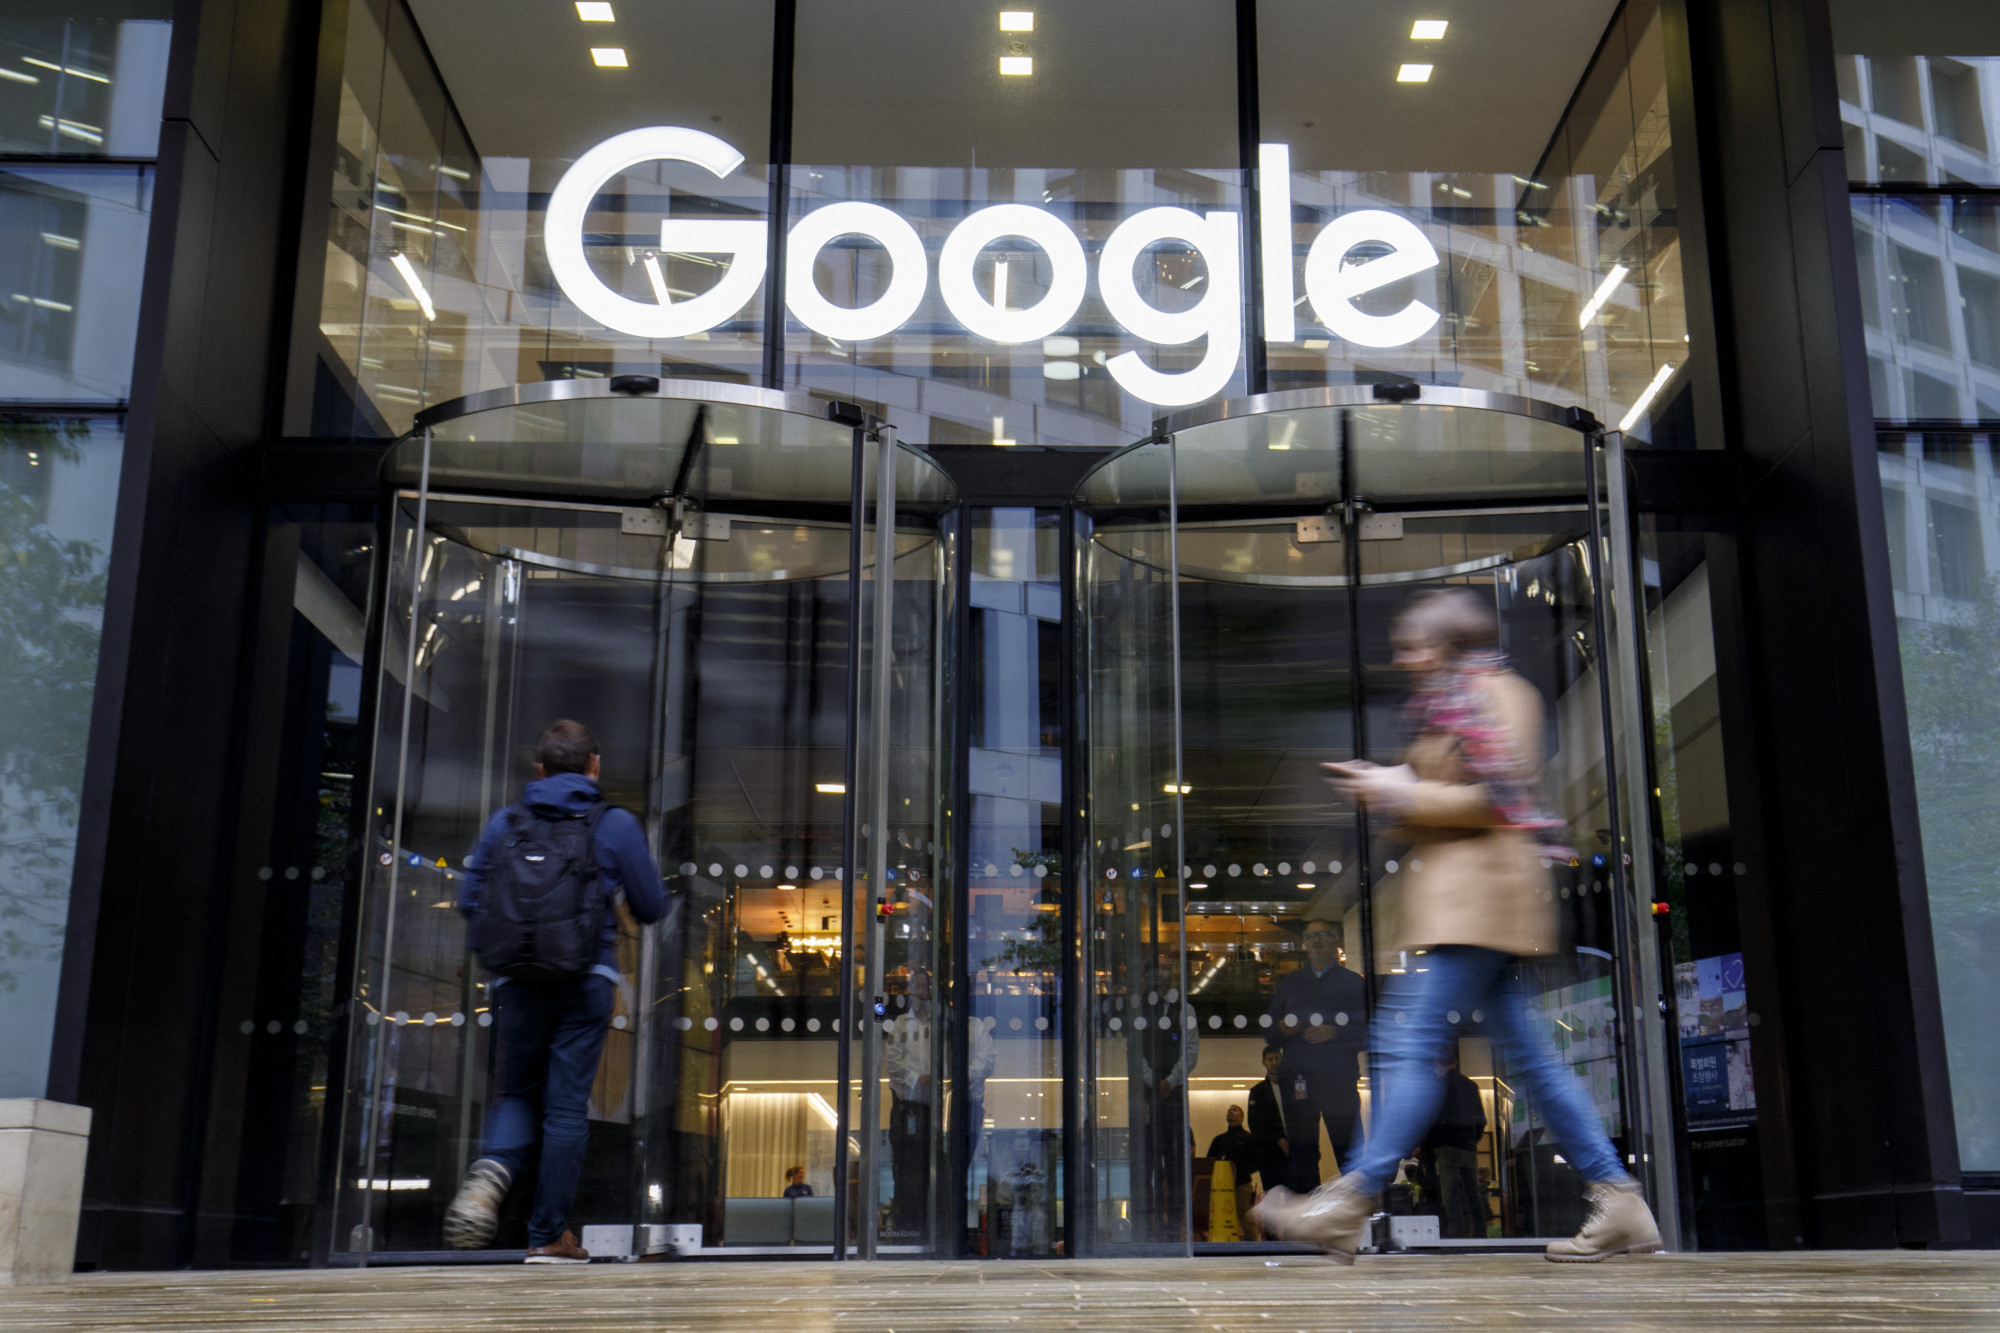 Diszkrimináció miatt fizetett 118 millió dollárt az ott dolgozó nőknek a Google